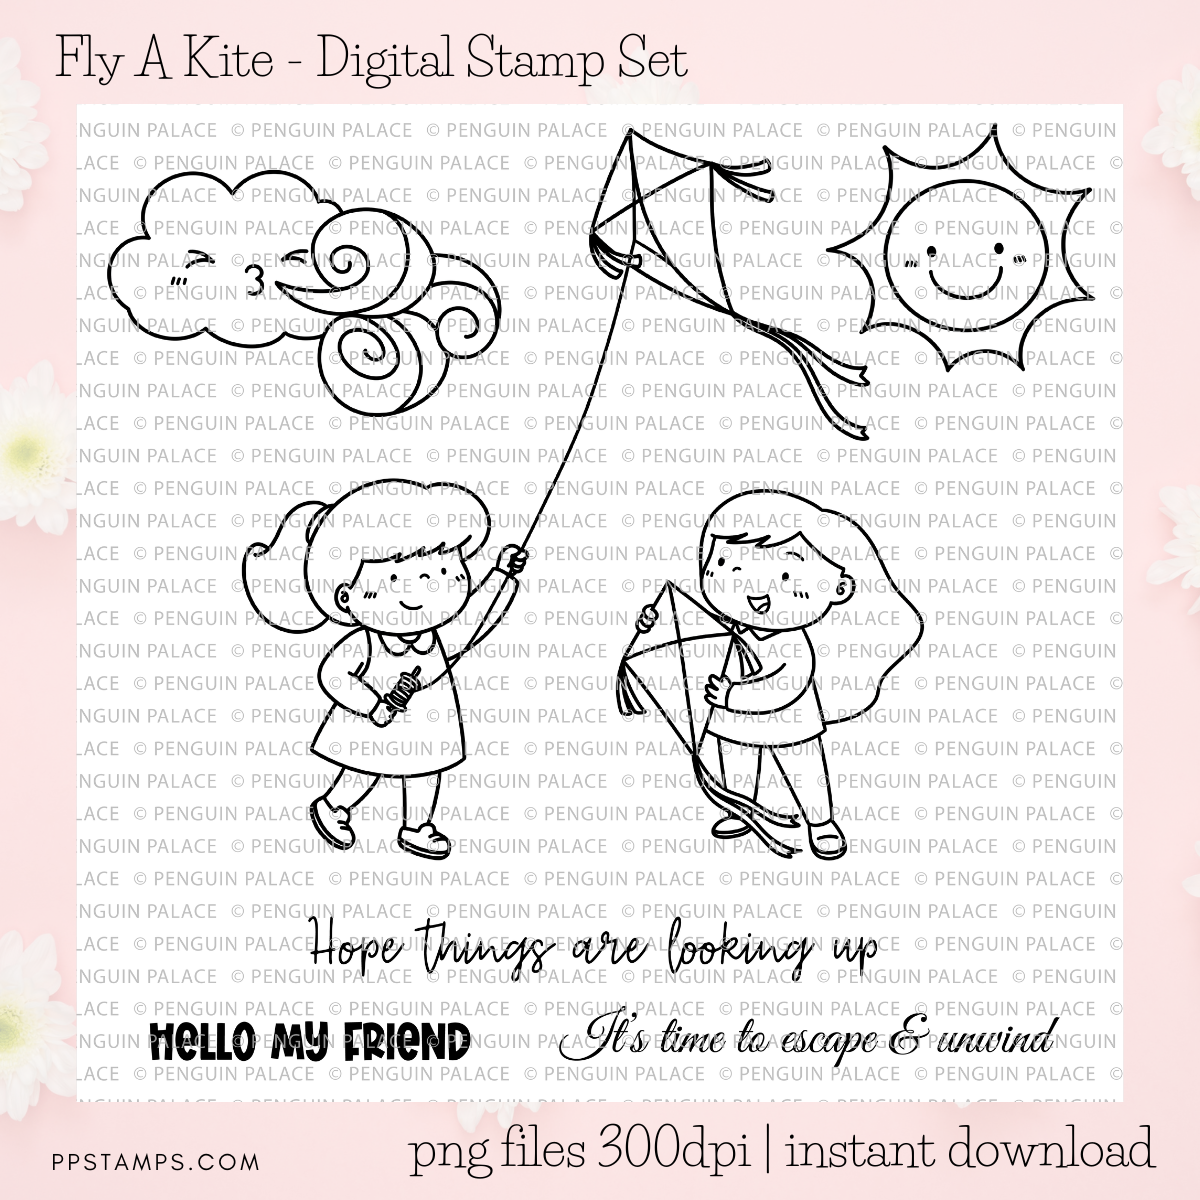 Fly A Kite - Digital Stamp